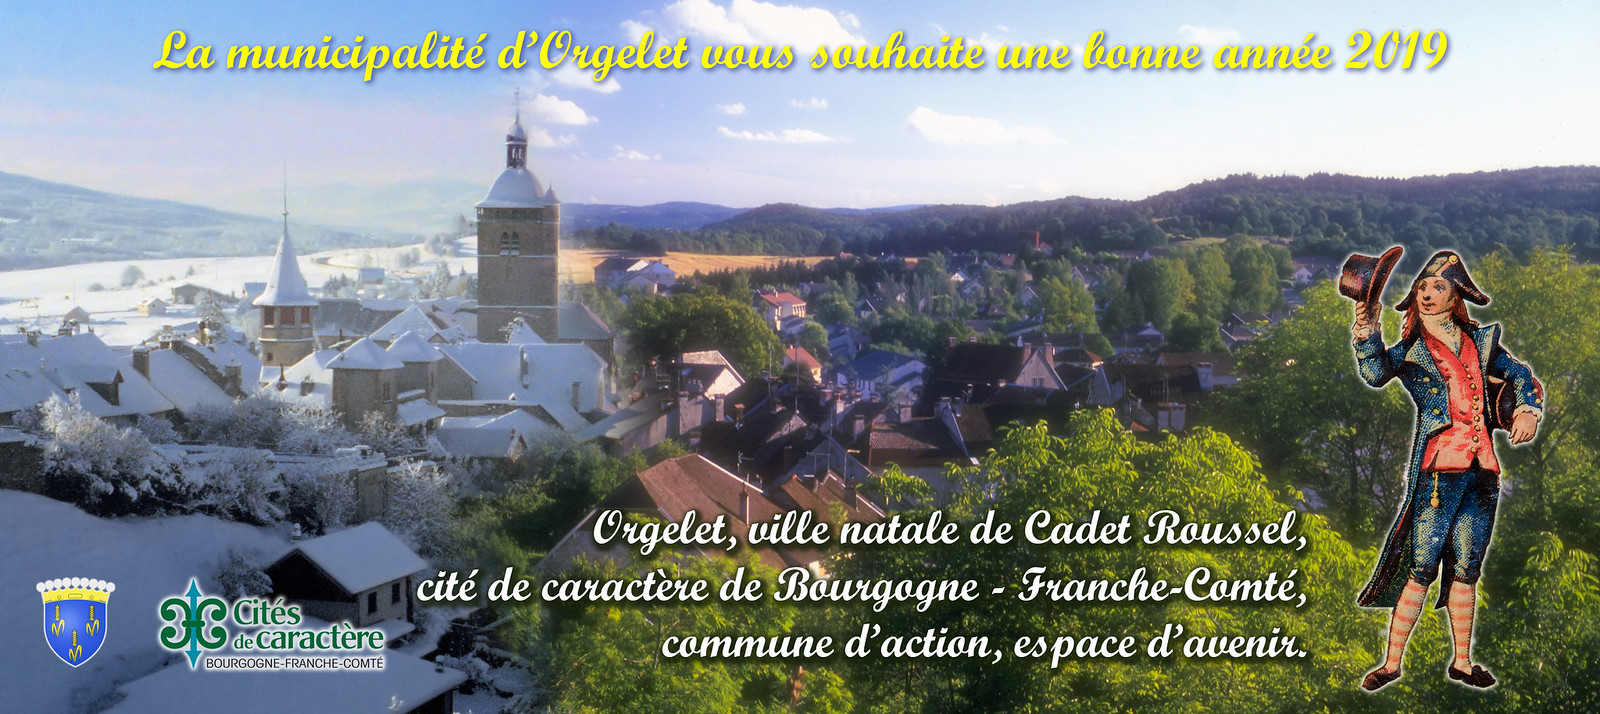 Carte de voeux 2019 de la commune d'Orgelet